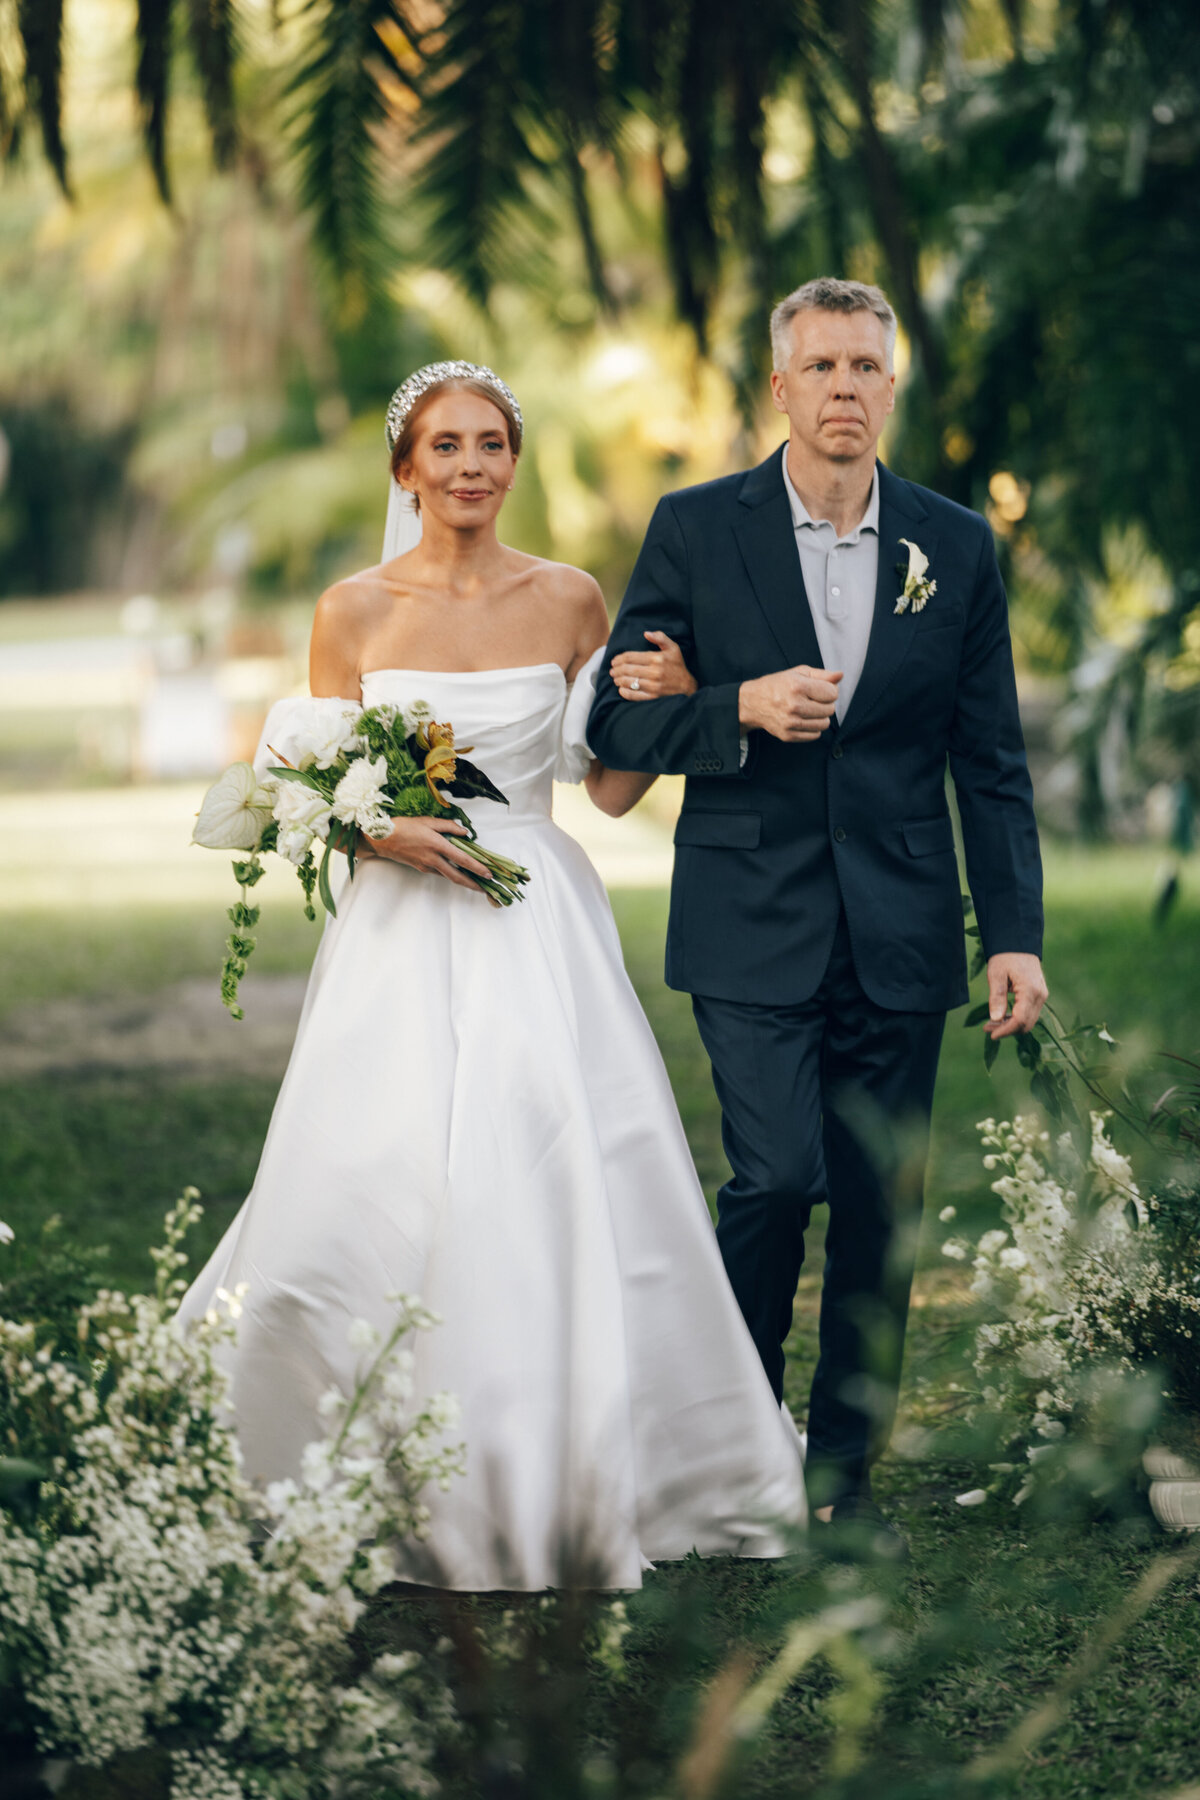 fairchild-botanical-garden-anti-bride-wedding-miami-florida-205